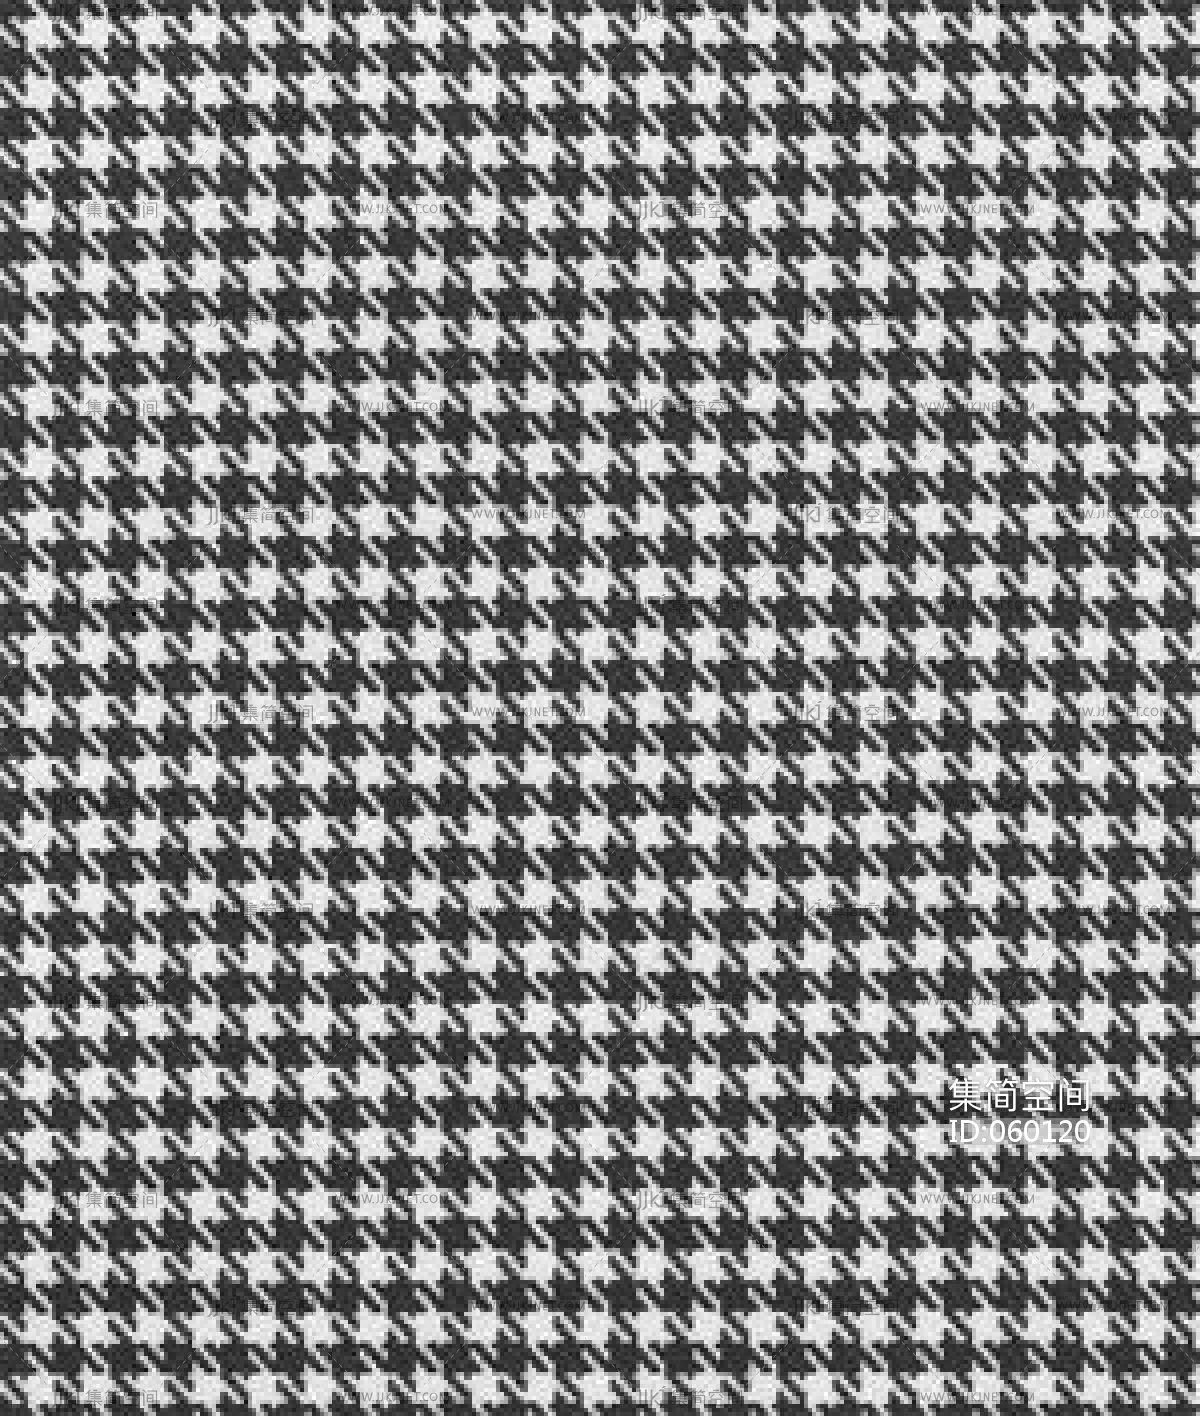 黑白条纹格子布料布艺 (1)材质贴图下载-【集简空间】「每日更新」